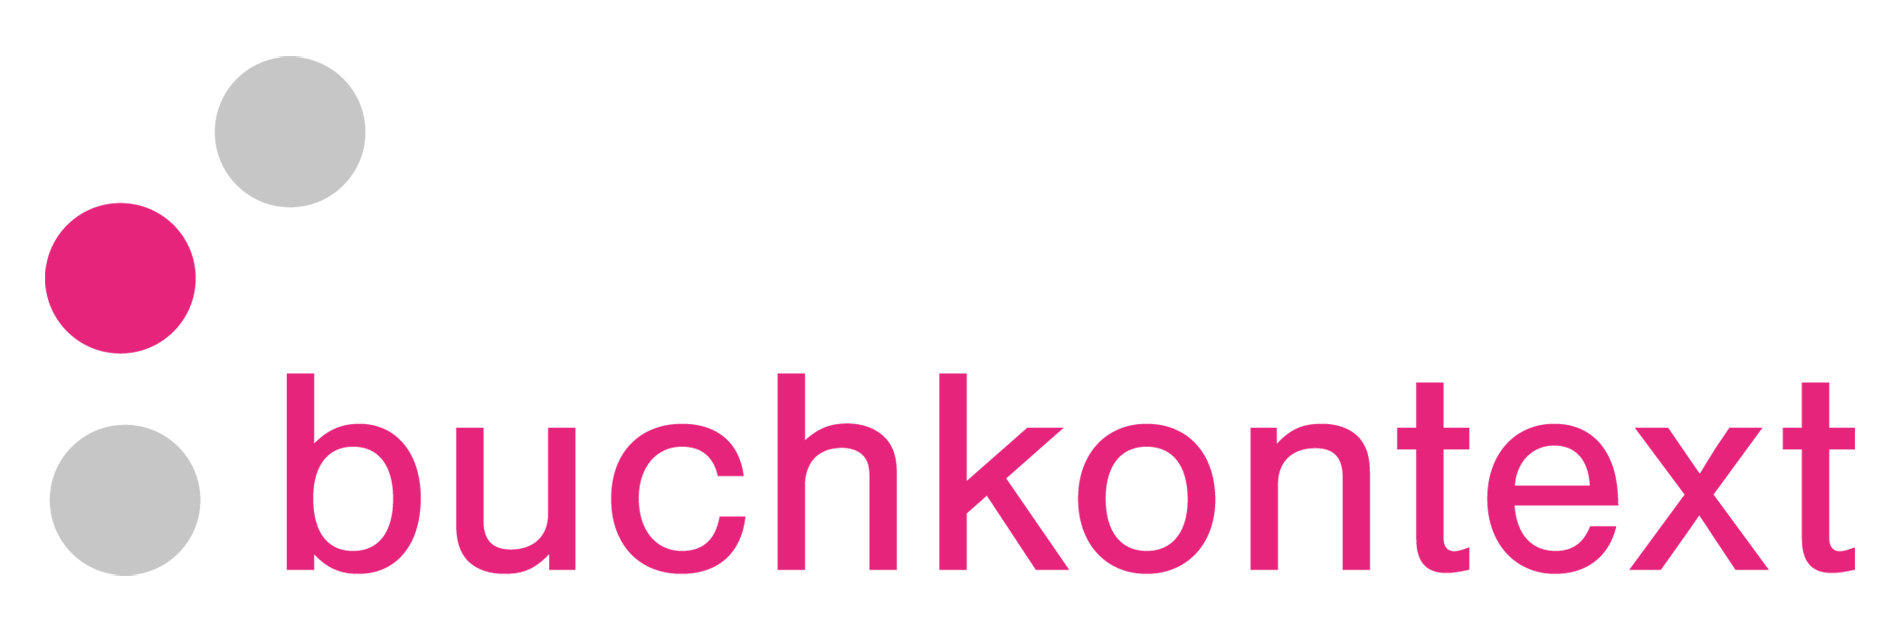 Kongressbuchhandlung buchkontext Logo